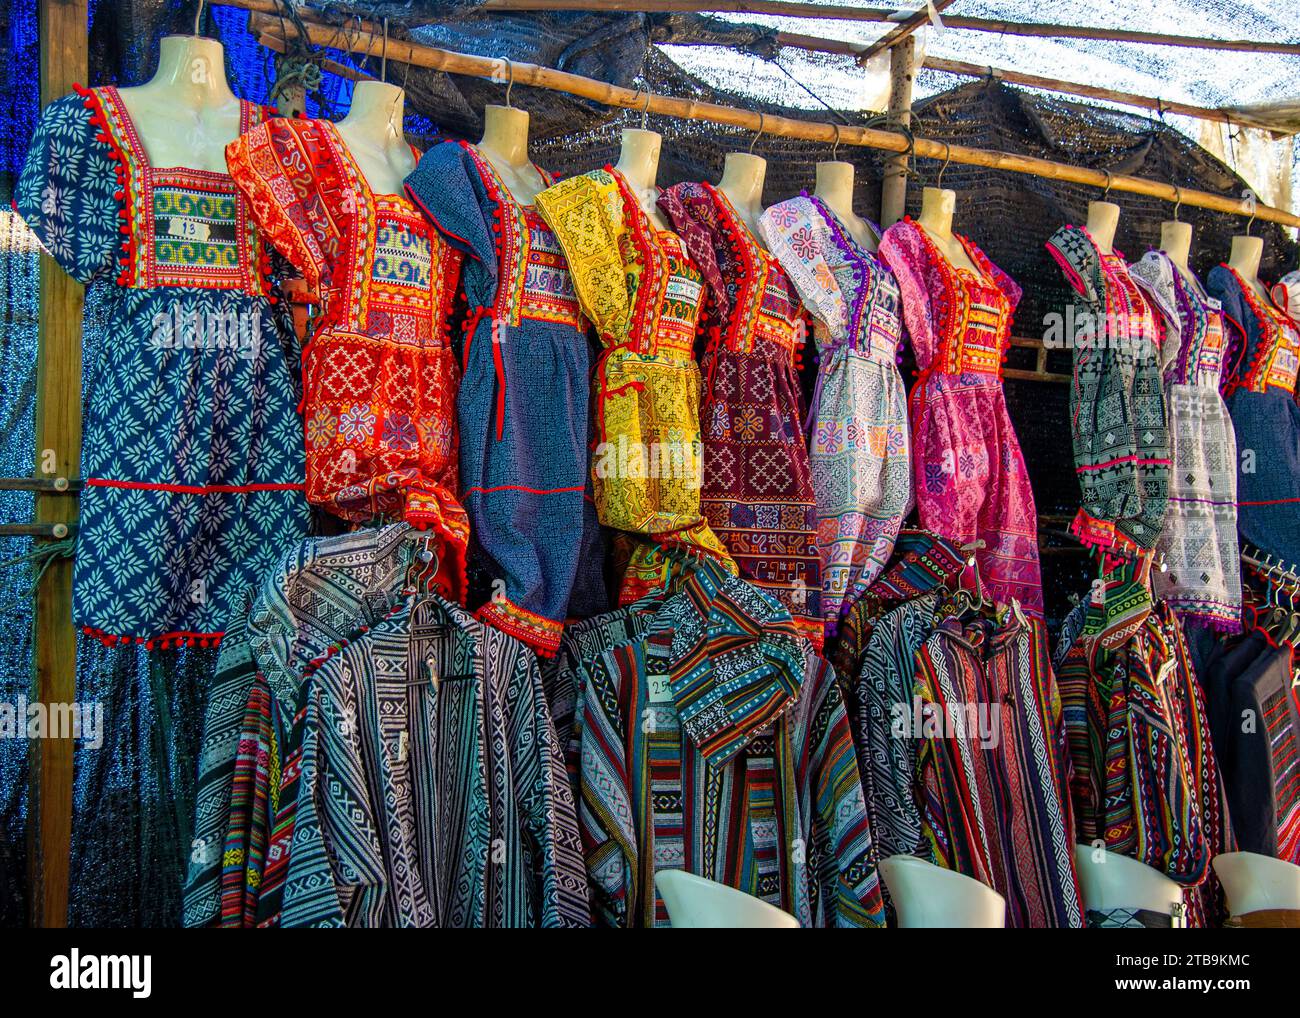 Un village dans le nord de la Thaïlande avec des vêtements et des costumes traditionnels colorés Banque D'Images